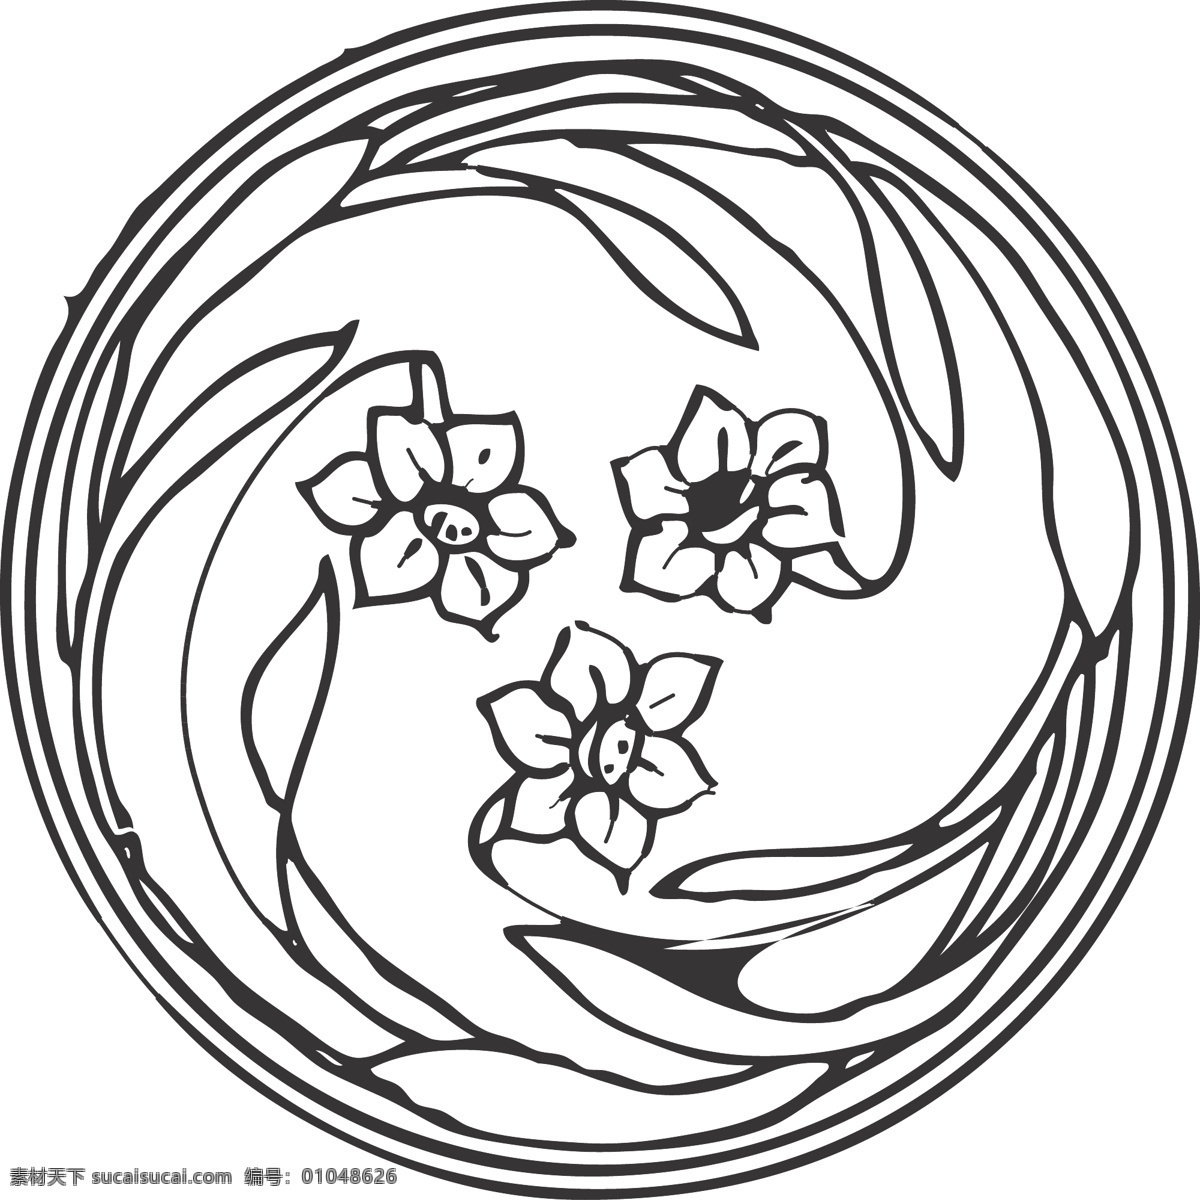 花纹 花卉 植物 观赏 纹理 线条 矢量 装饰 插画 白描 圆形 线条装饰纹样 文化艺术 传统文化